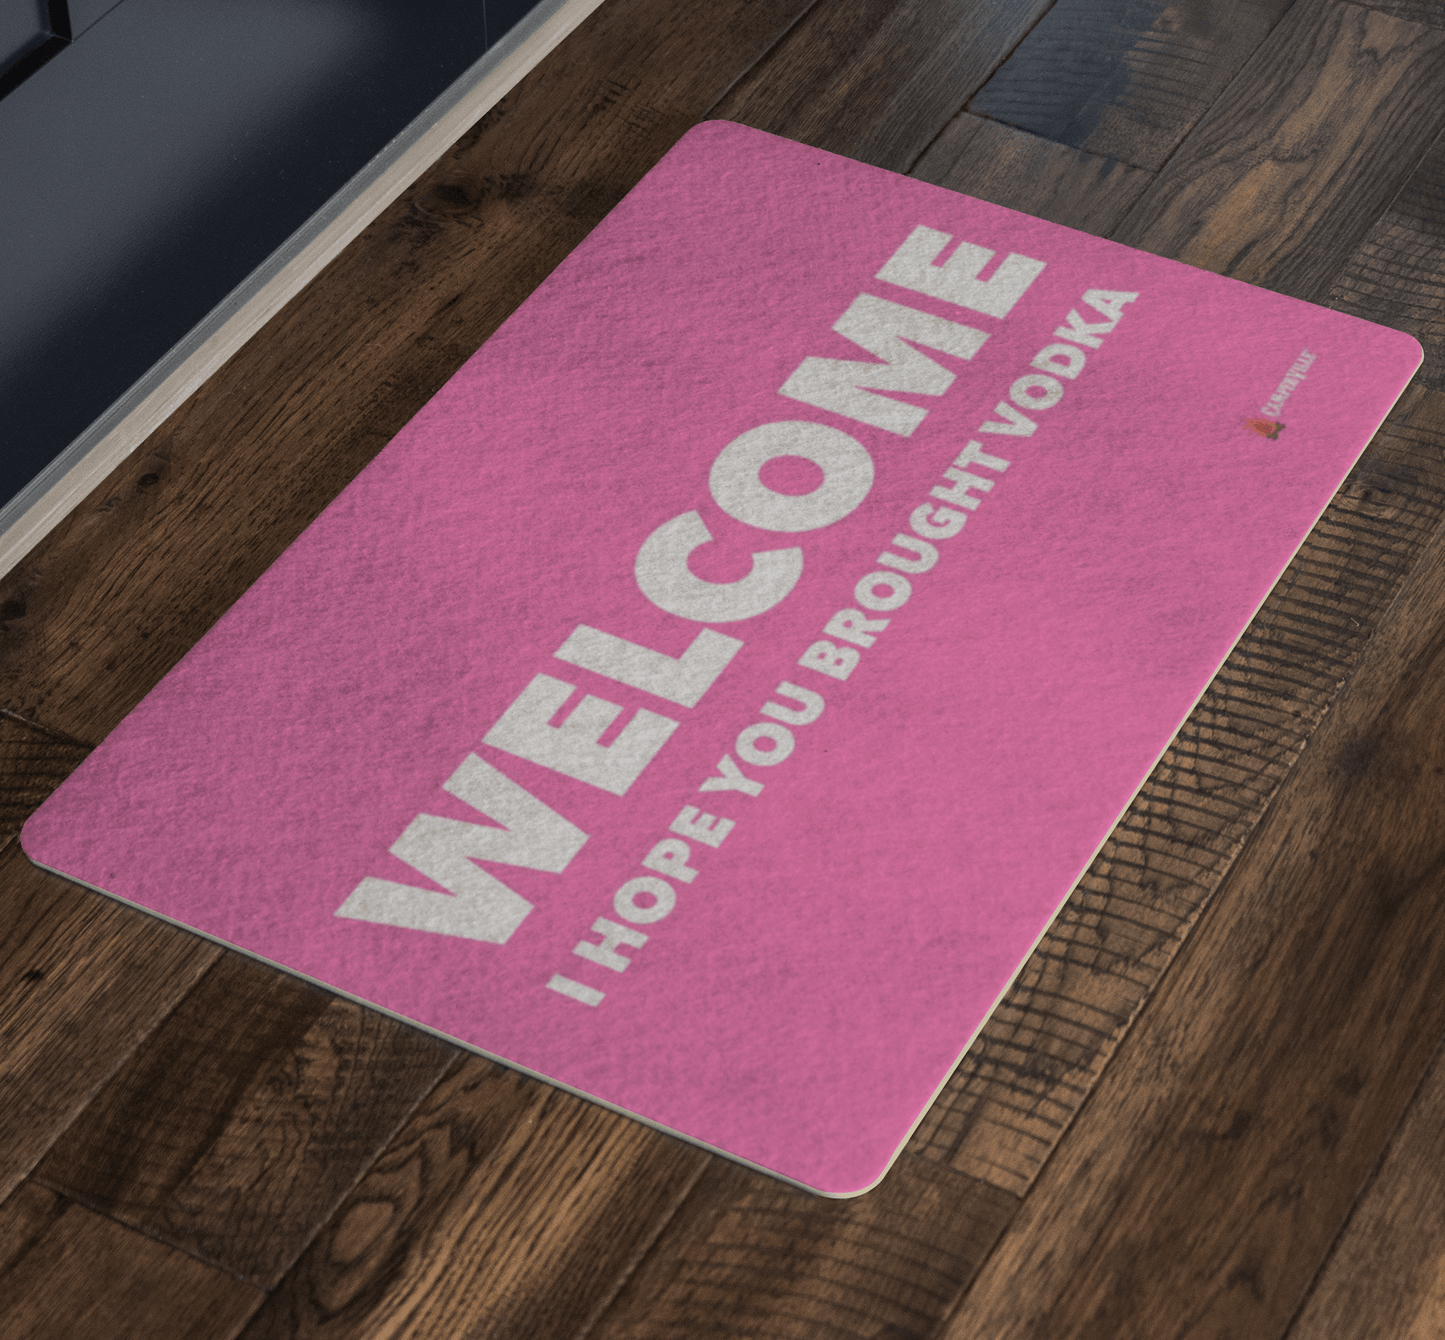 "Welcome - I Hope You Brought Vodka" Doormat